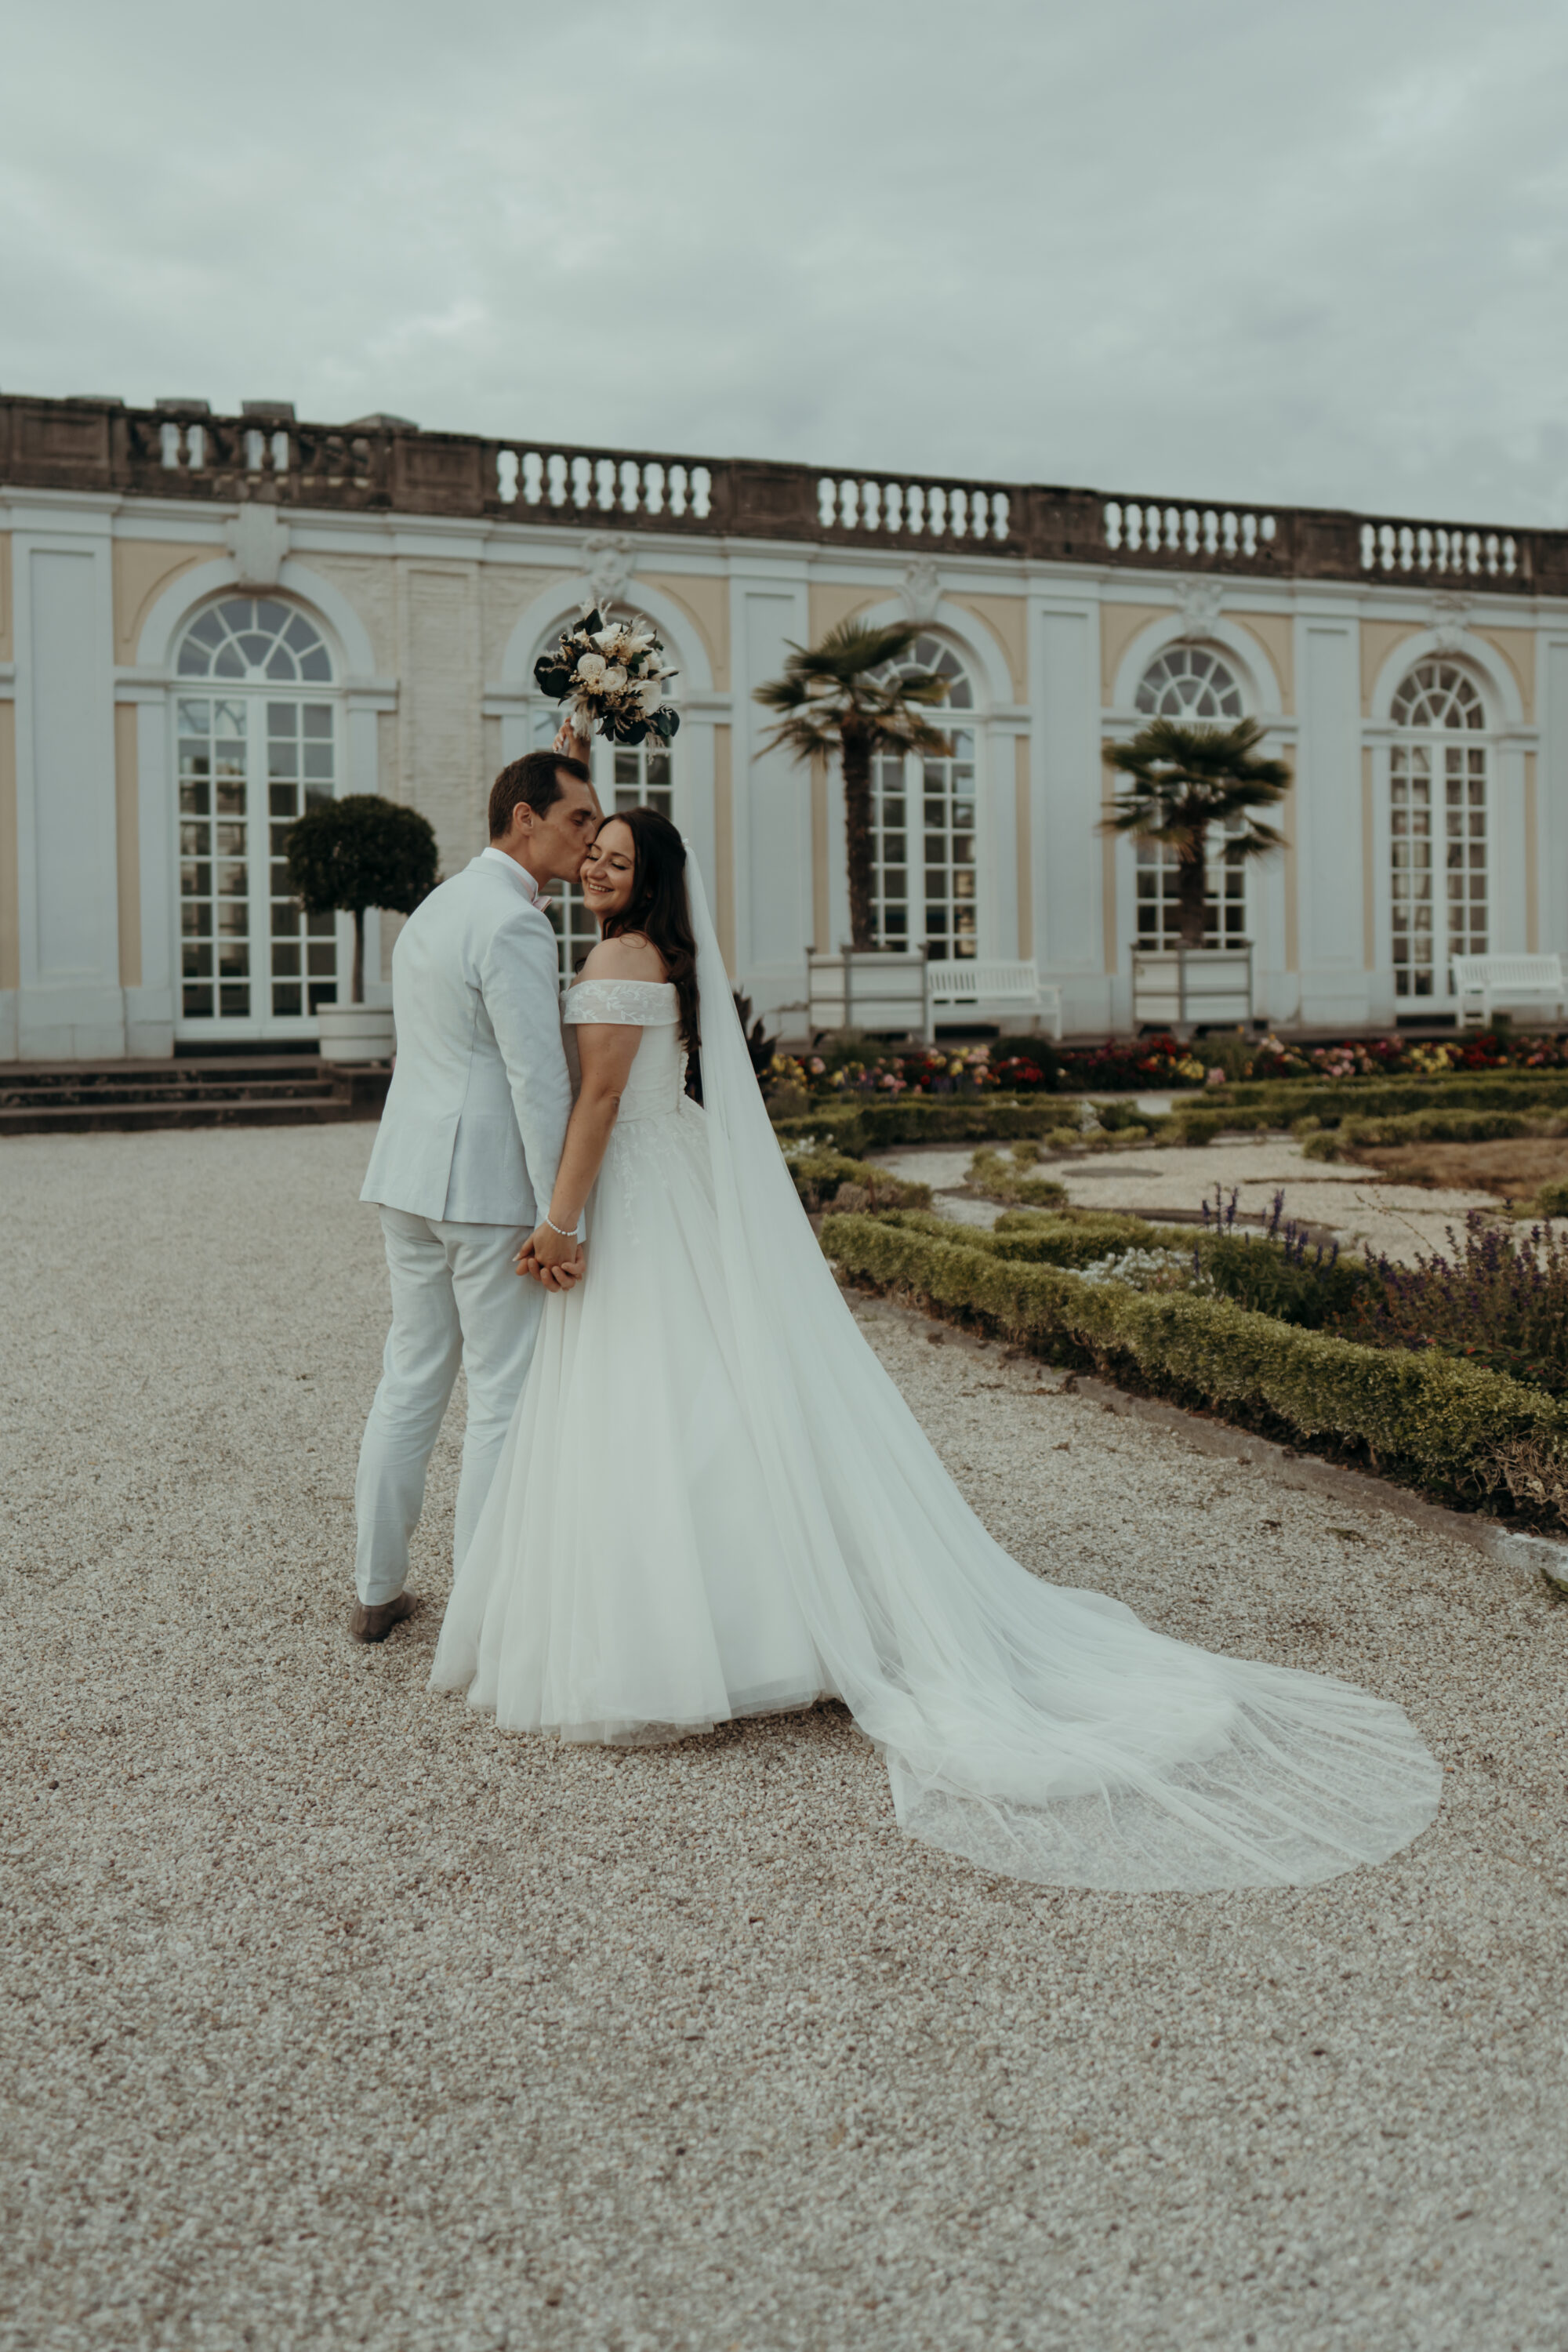 Hochzeitspaar in Schlossgarten, Bräutigam küsst Braut auf Wange, Braut hält Strauß hoch